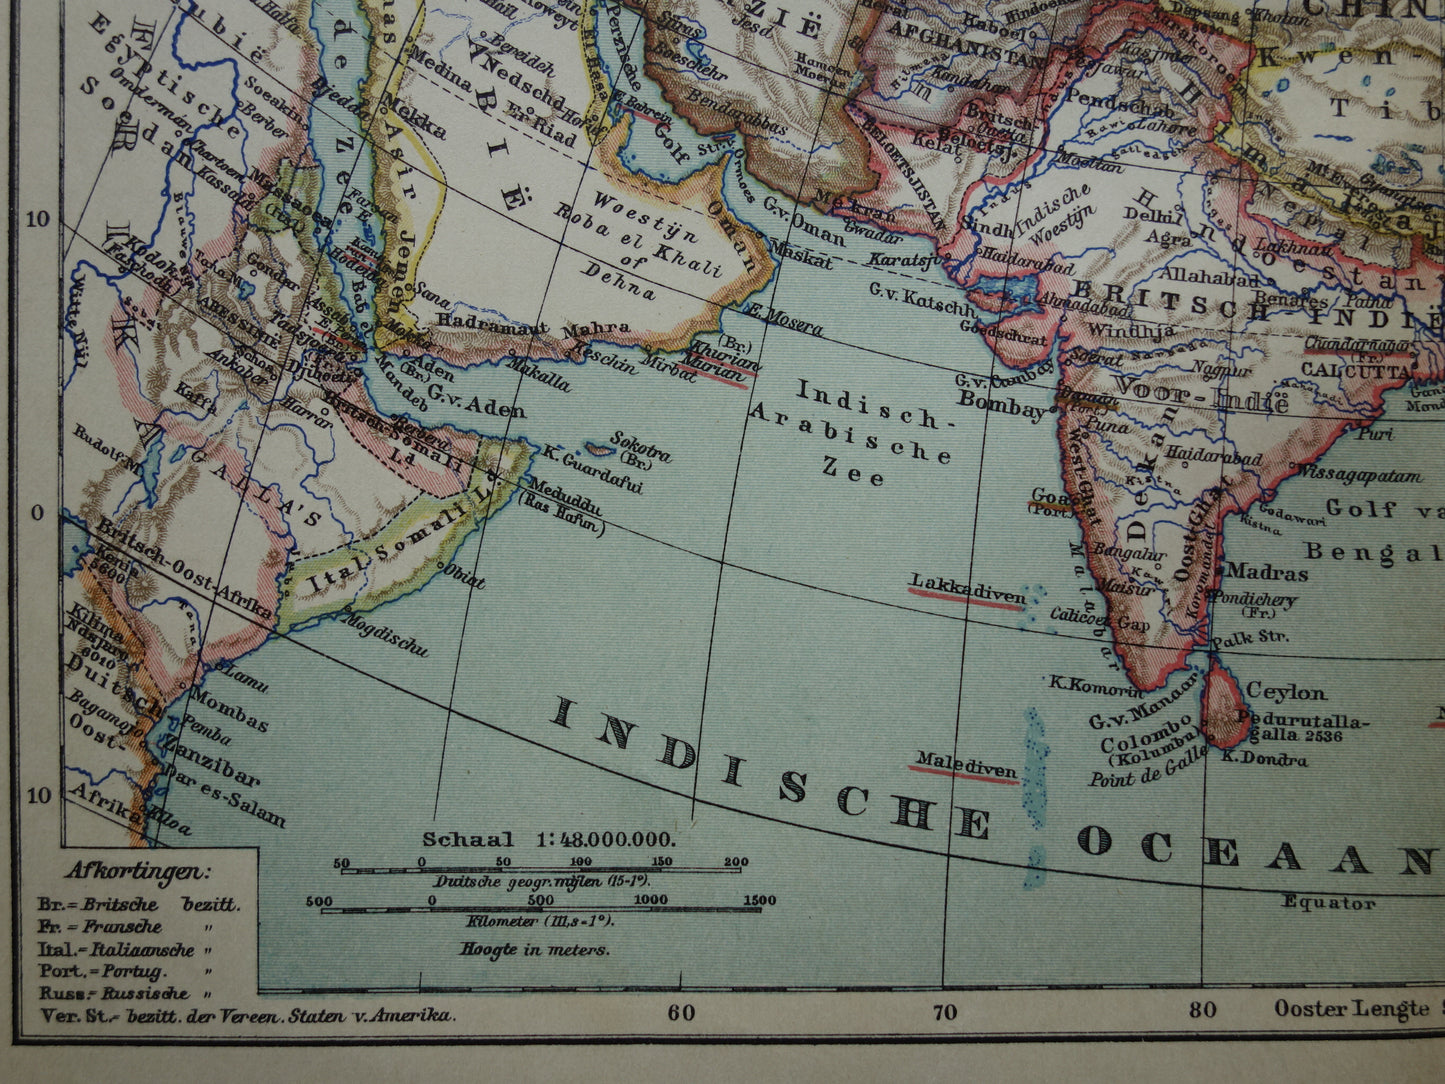 AZIË oude landkaart van continent Azië uit 1905 originele Nederlandse antieke kaart